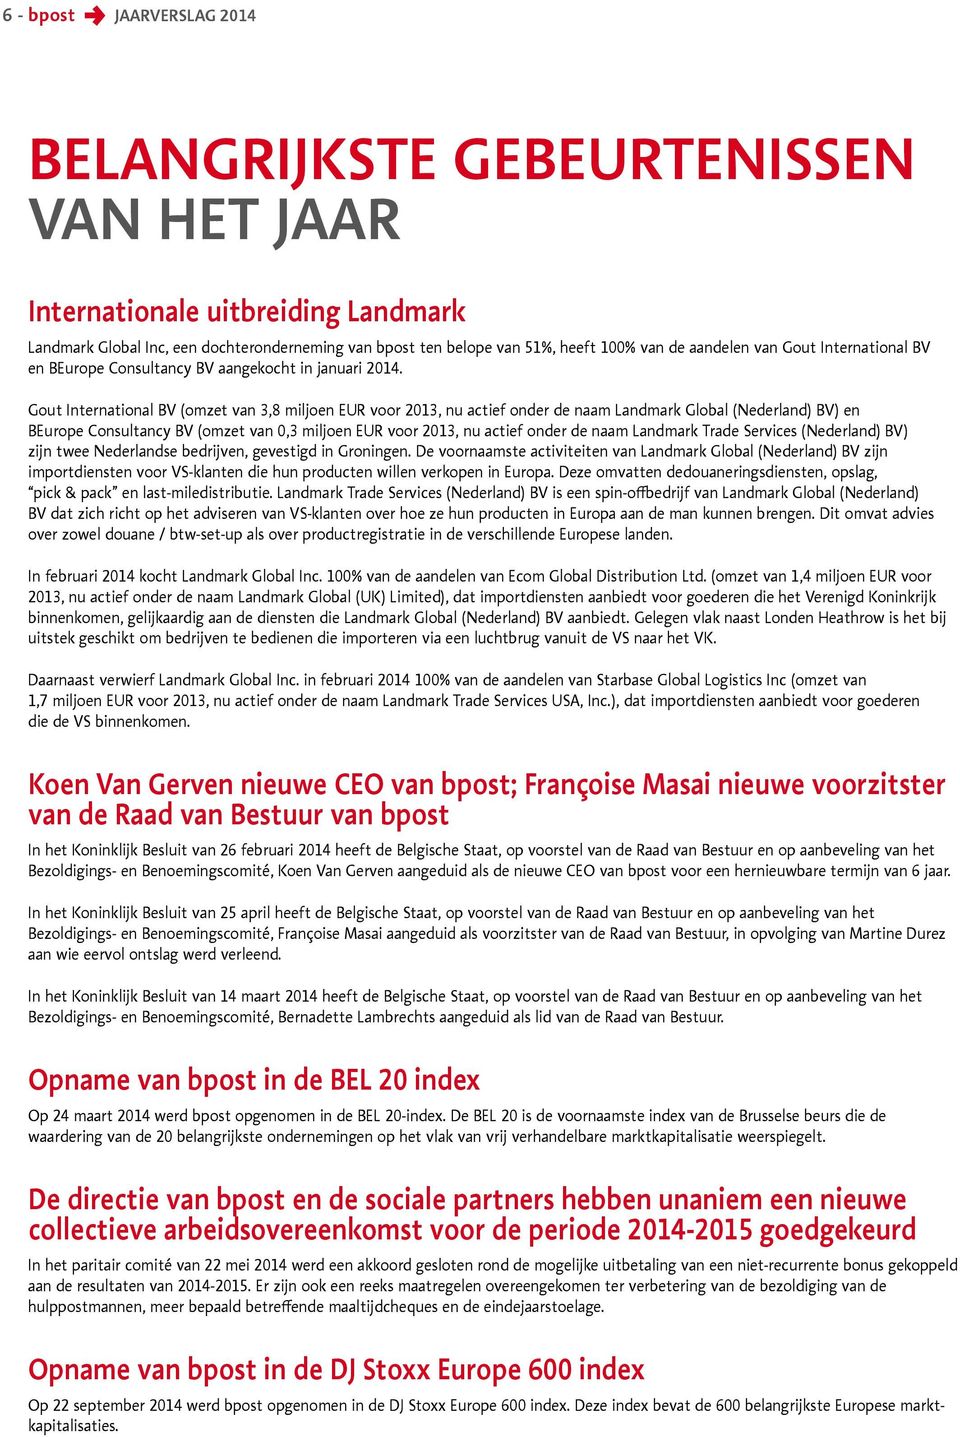 Gout International BV (omzet van 3,8 miljoen EUR voor 2013, nu actief onder de naam Landmark Global (Nederland) BV) en BEurope Consultancy BV (omzet van 0,3 miljoen EUR voor 2013, nu actief onder de